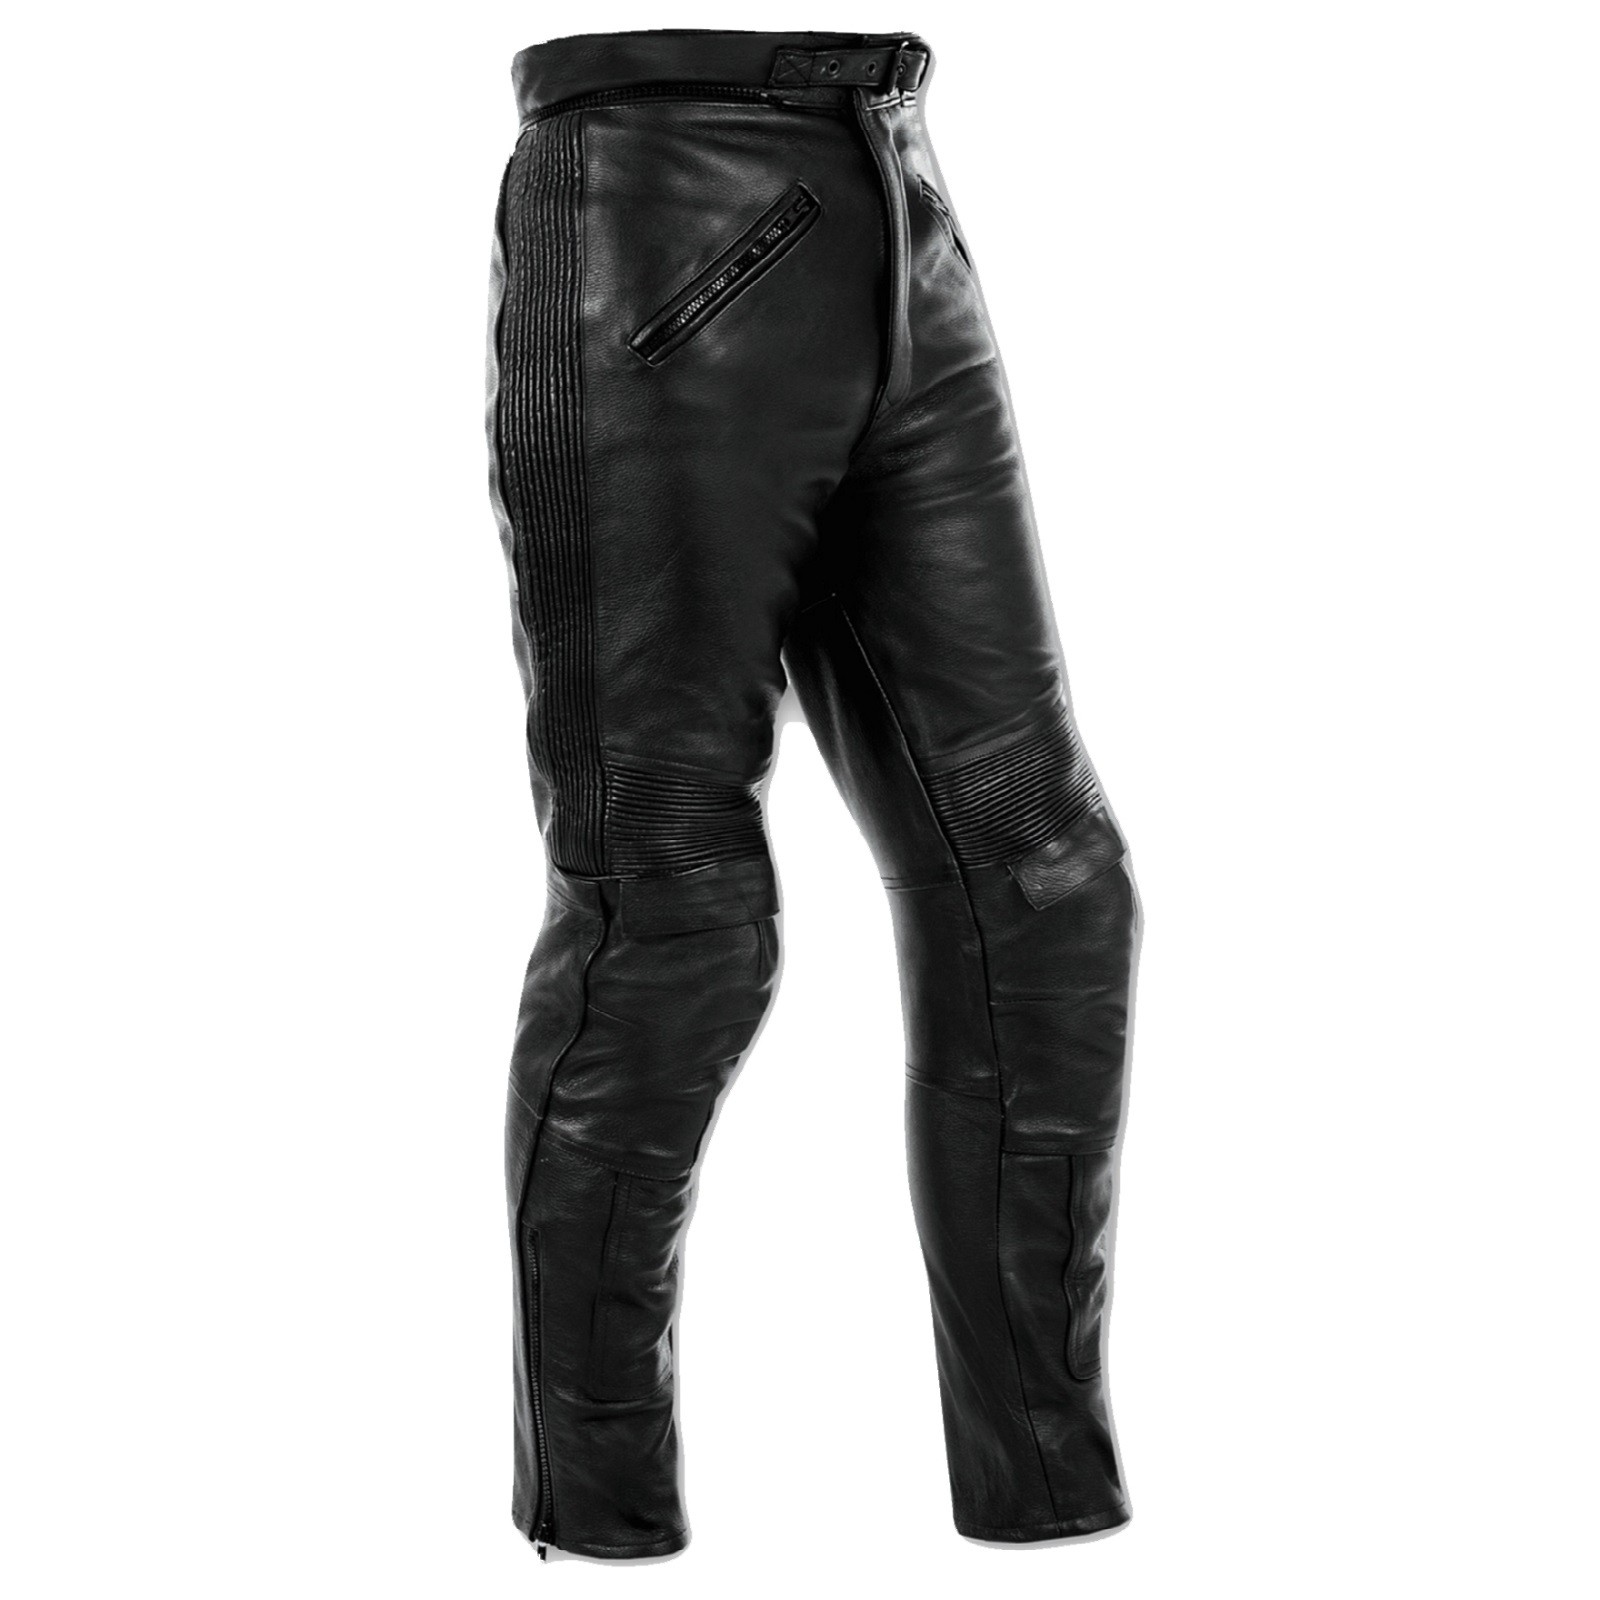 Abbigliamento Moto e Accessori - Pantaloni Pelle Moto Sport